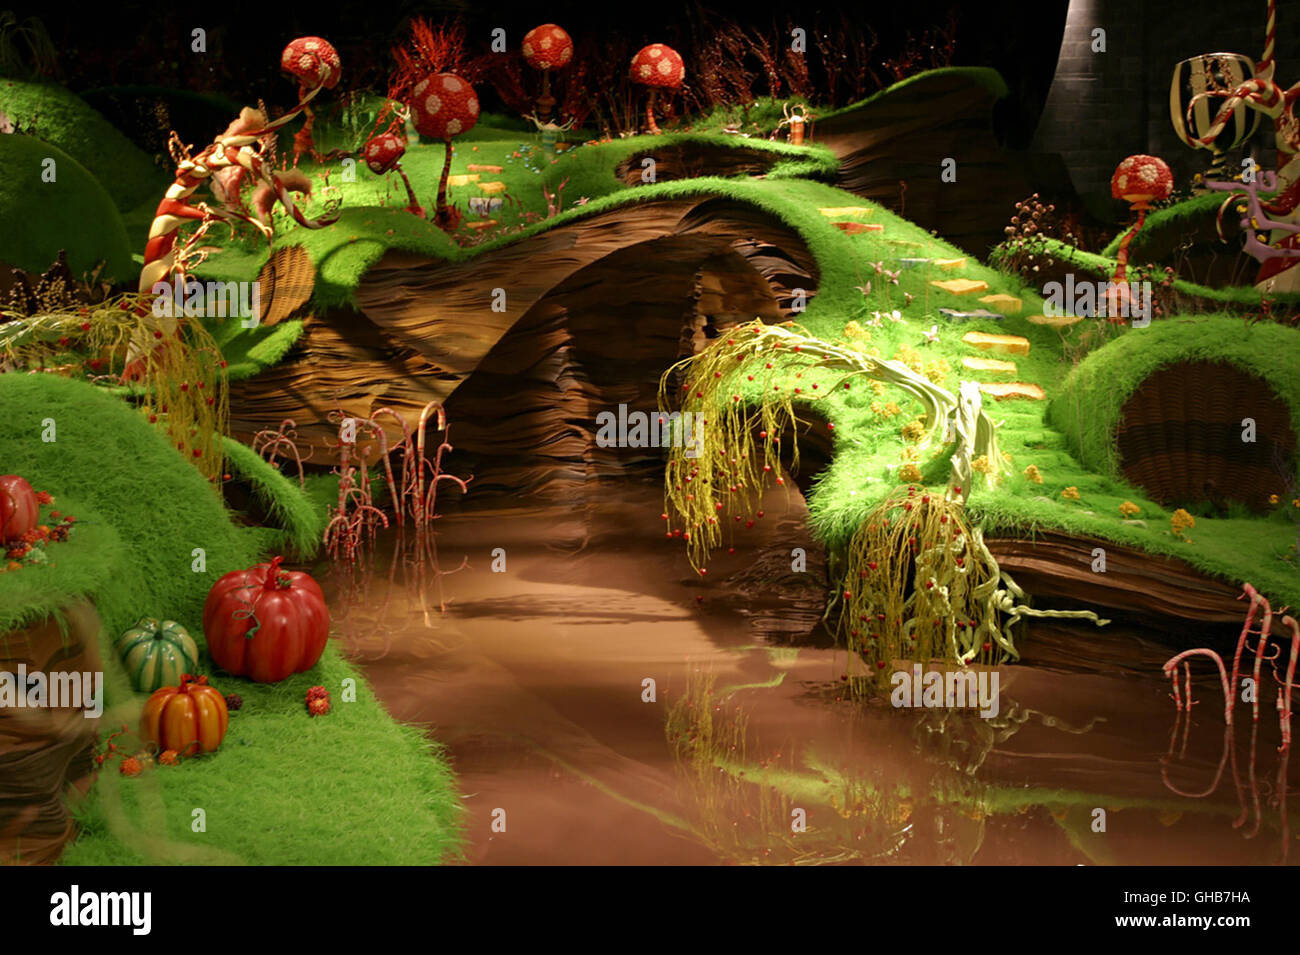 Roald Dahl Charlie e la fabbrica di cioccolato Willy Wonka Costume da  gioco di ruolo per bambini